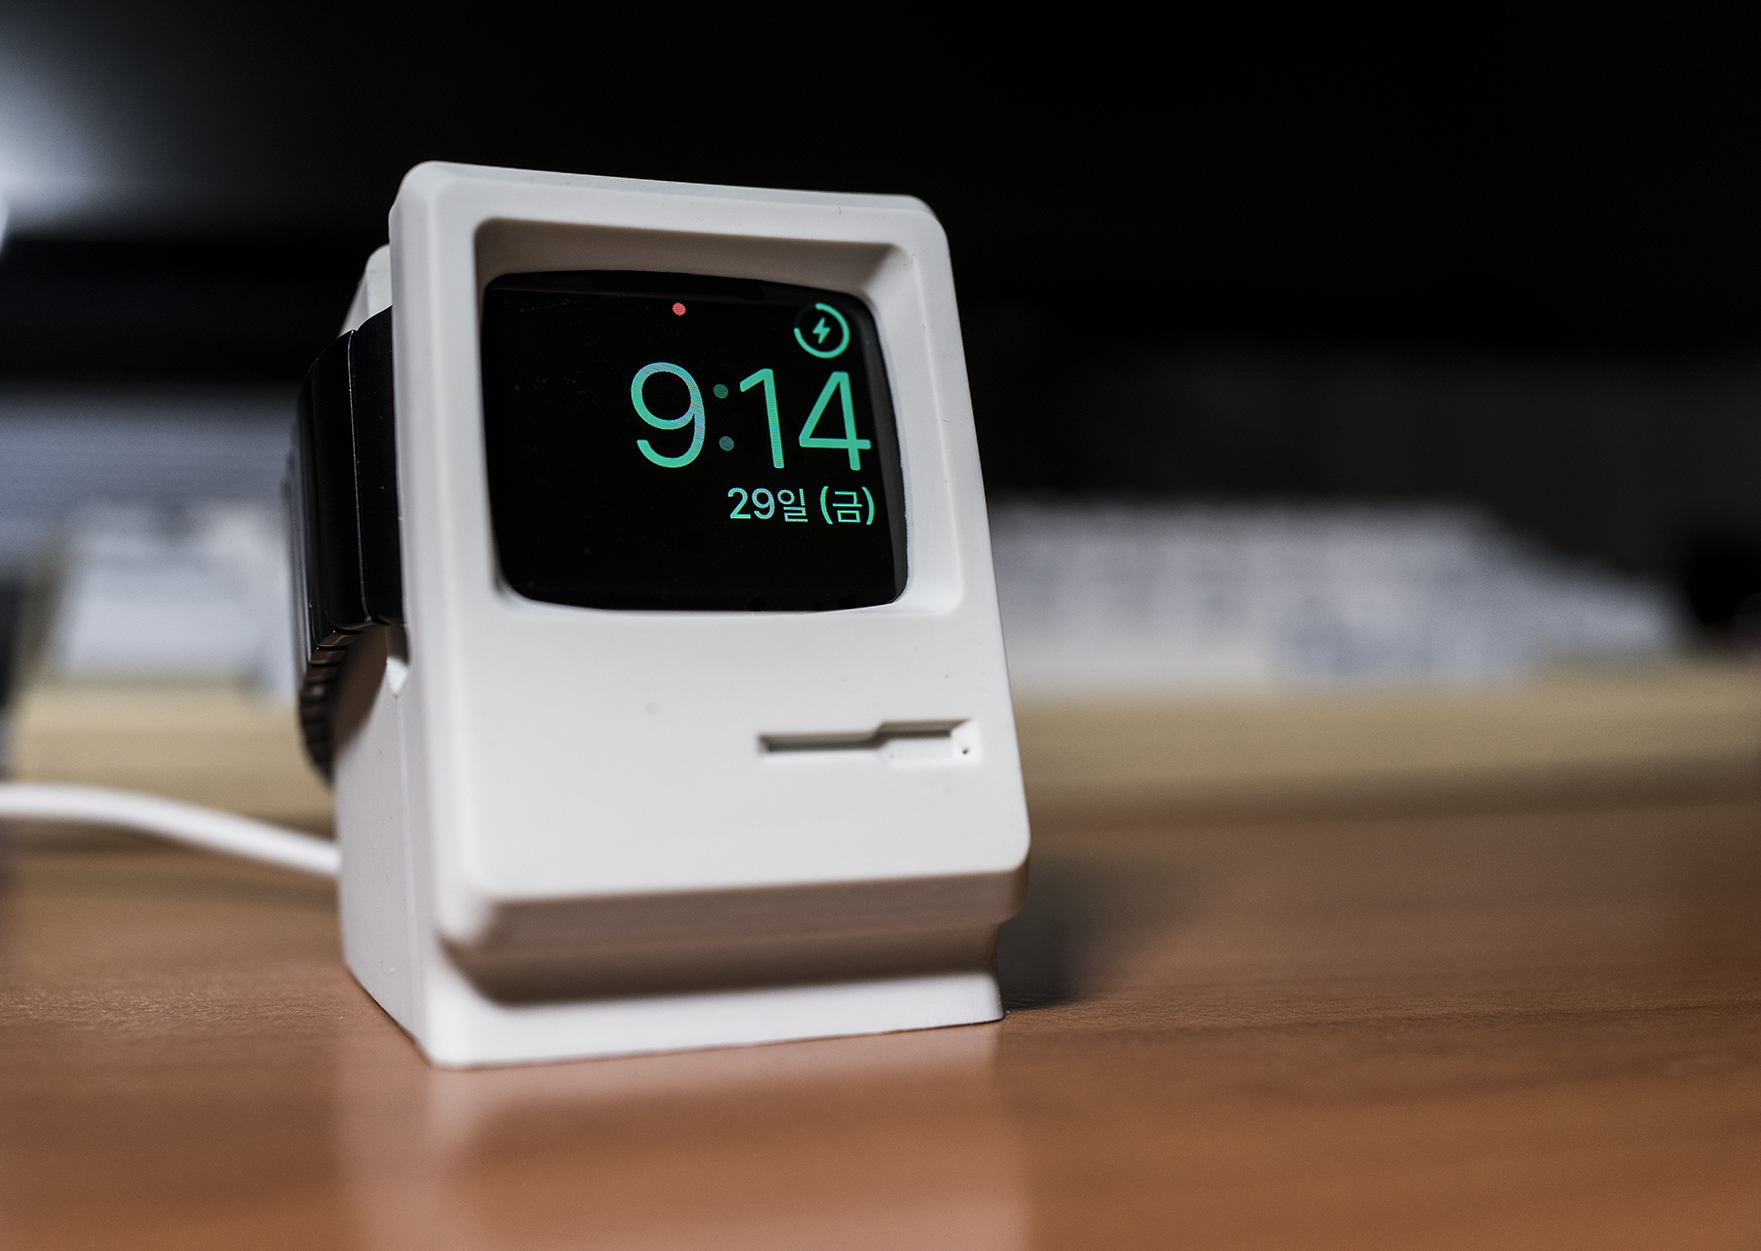 Apple watch dock: Mac